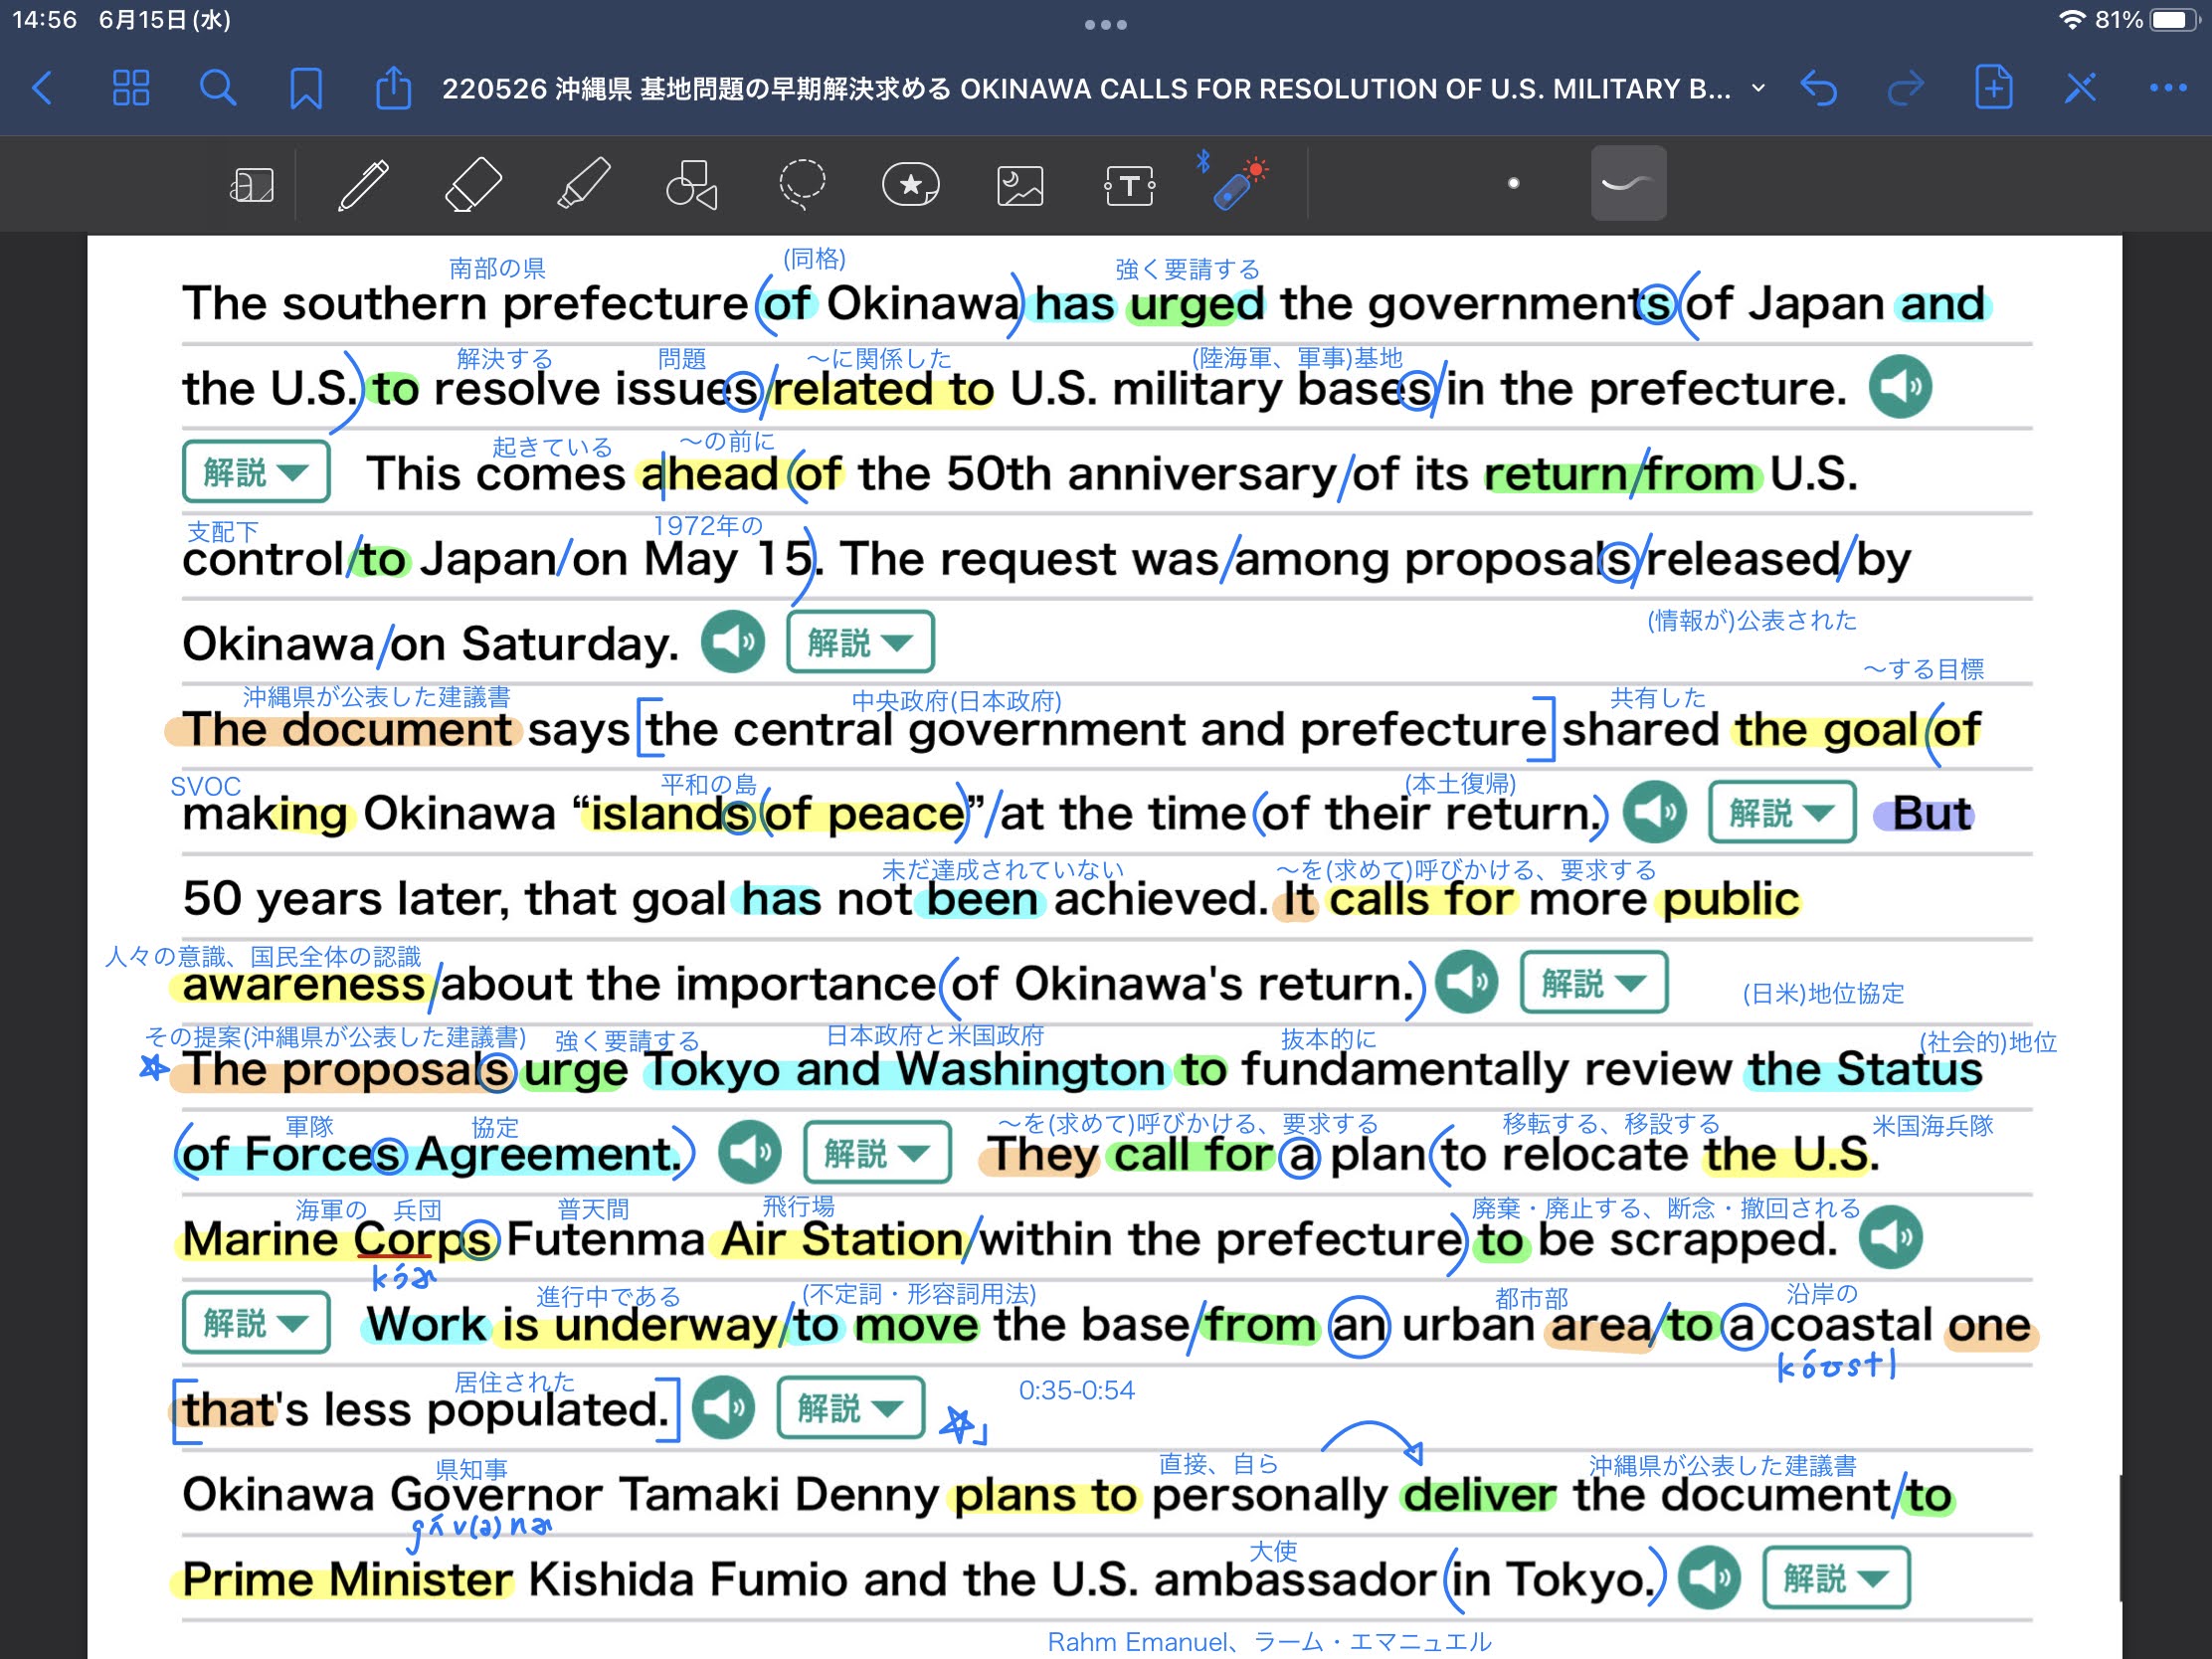 沖縄県-基地問題の早期解決求める　OKINAWA-CALLS-FOR-RESOLUTION-OF-U.S.-MILITARY-BASE-ISSUES